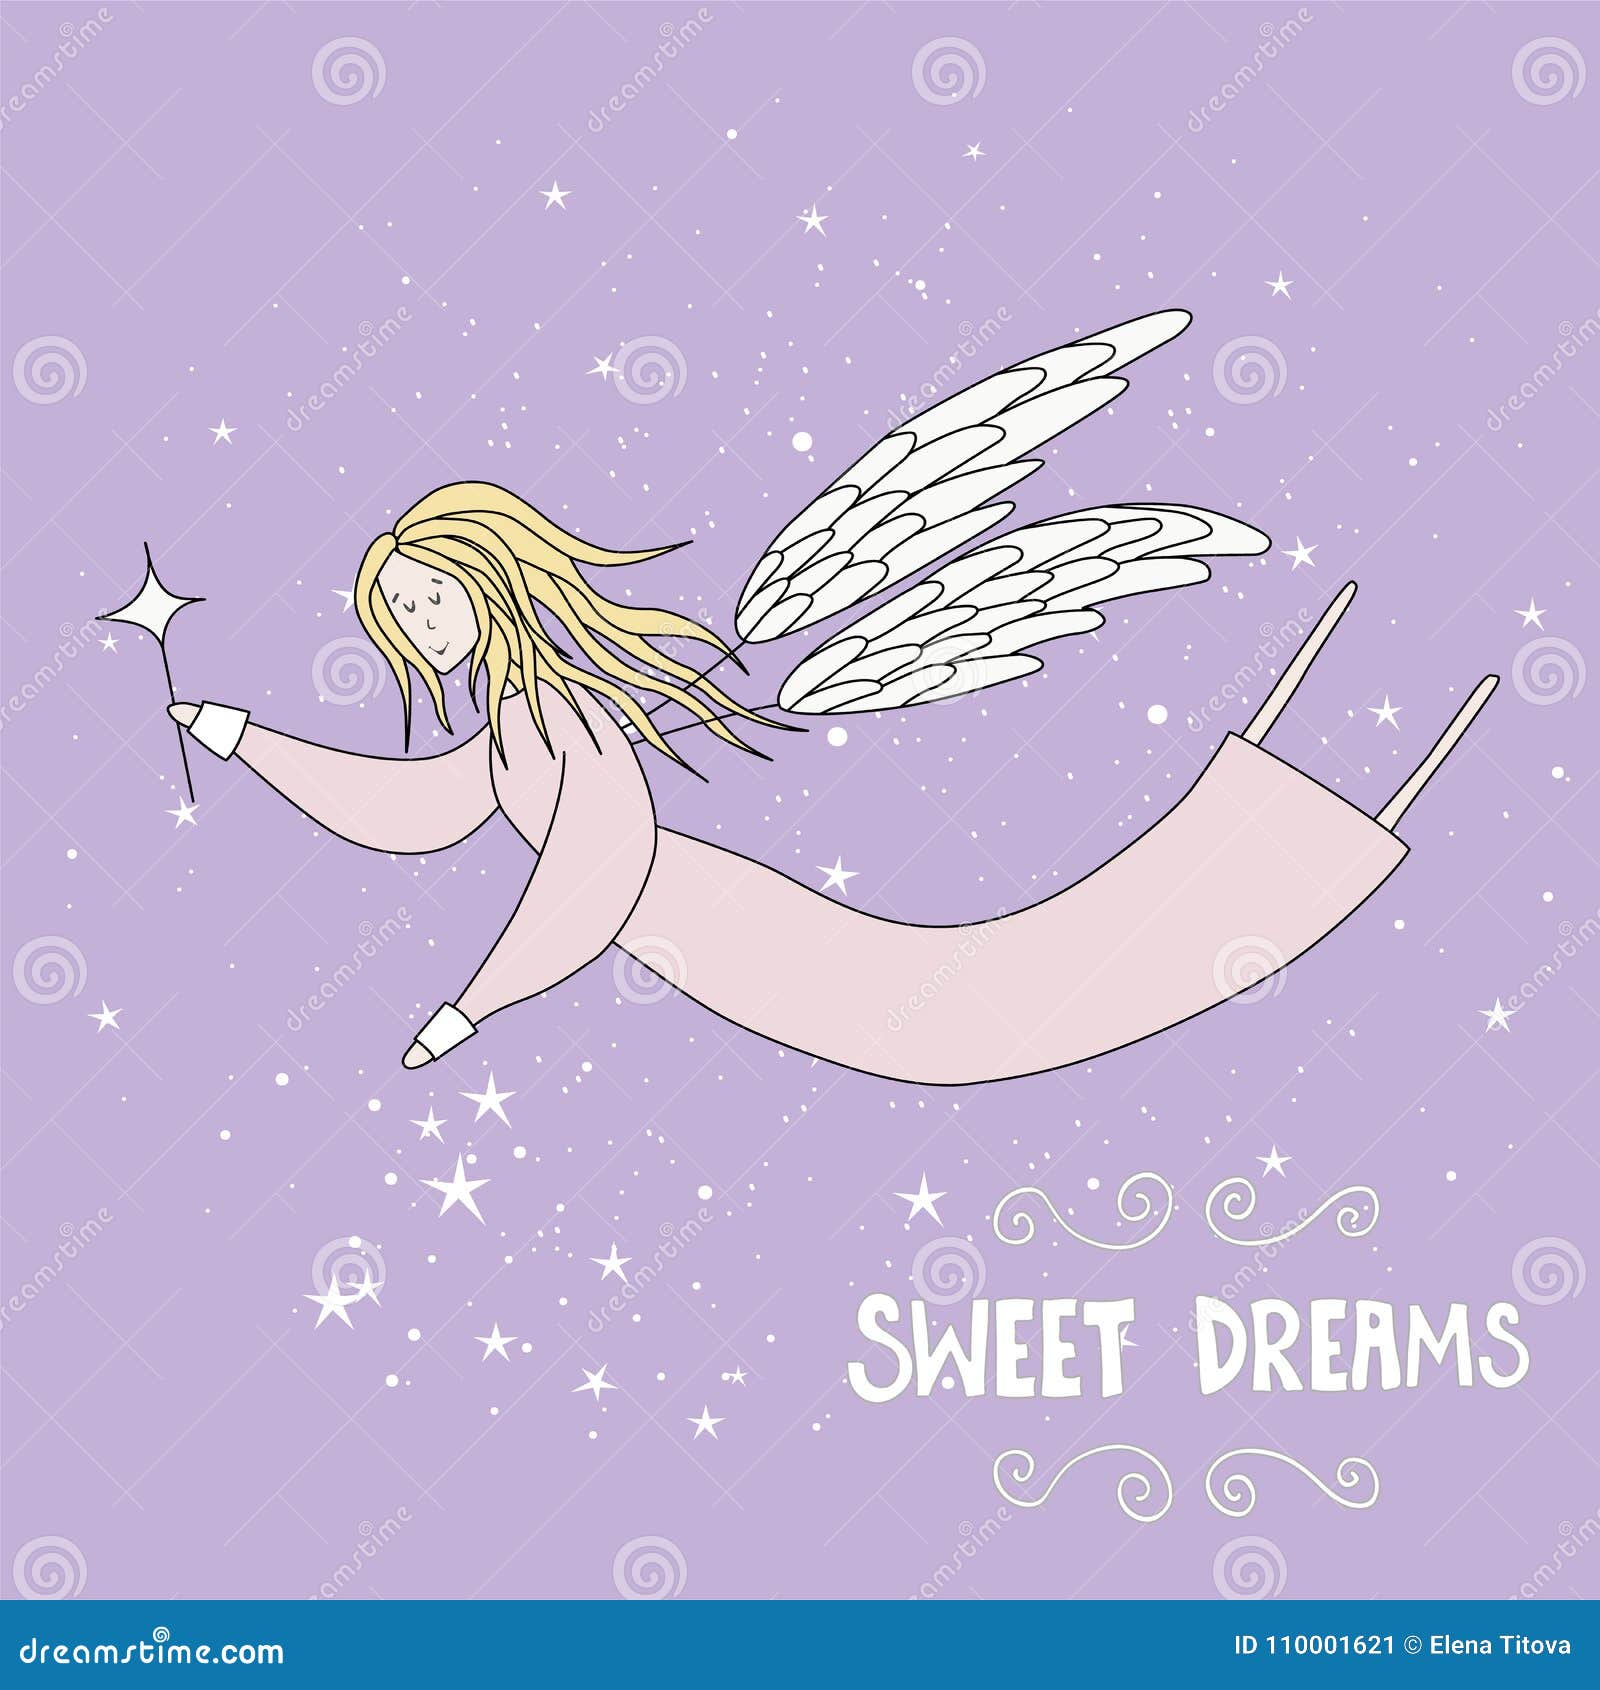 Flying Fairy in Night Sky Vector Illustration Stock Vector ...